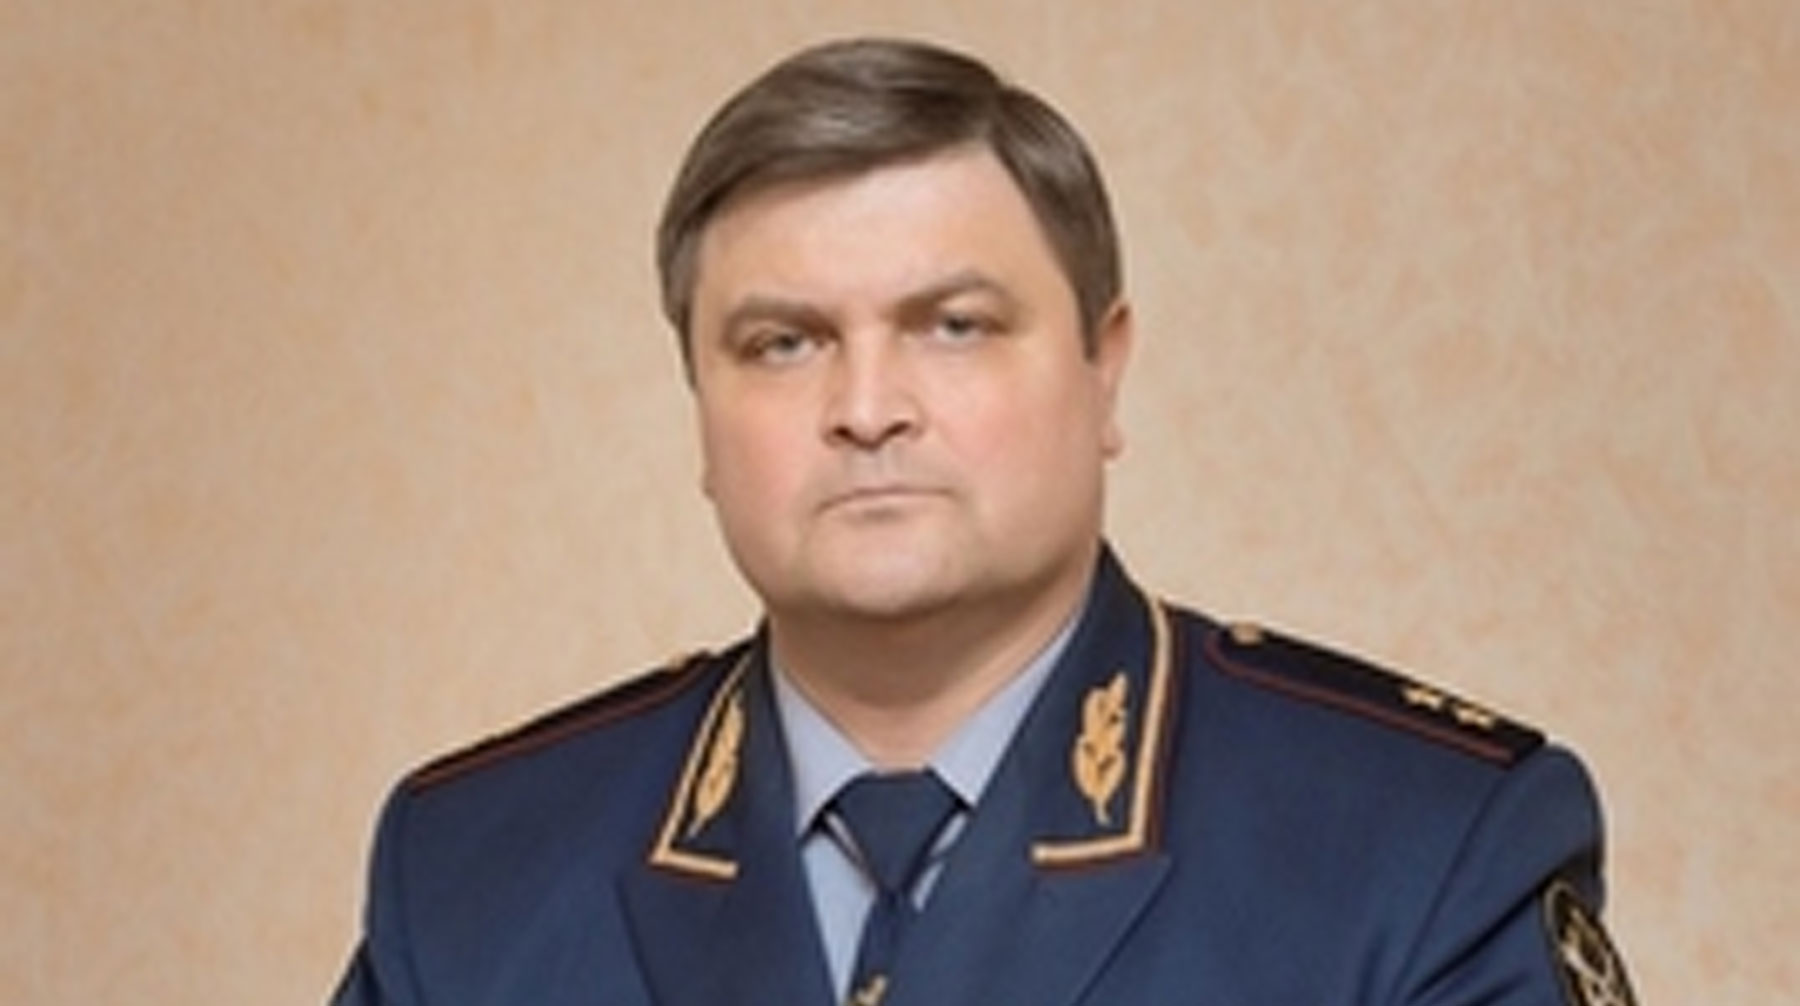 Анатолий Рудый заявил, что не верит в виновность своего бывшего коллеги и отметил его заслуги в решении проблем ведомства Анатолий Рудый